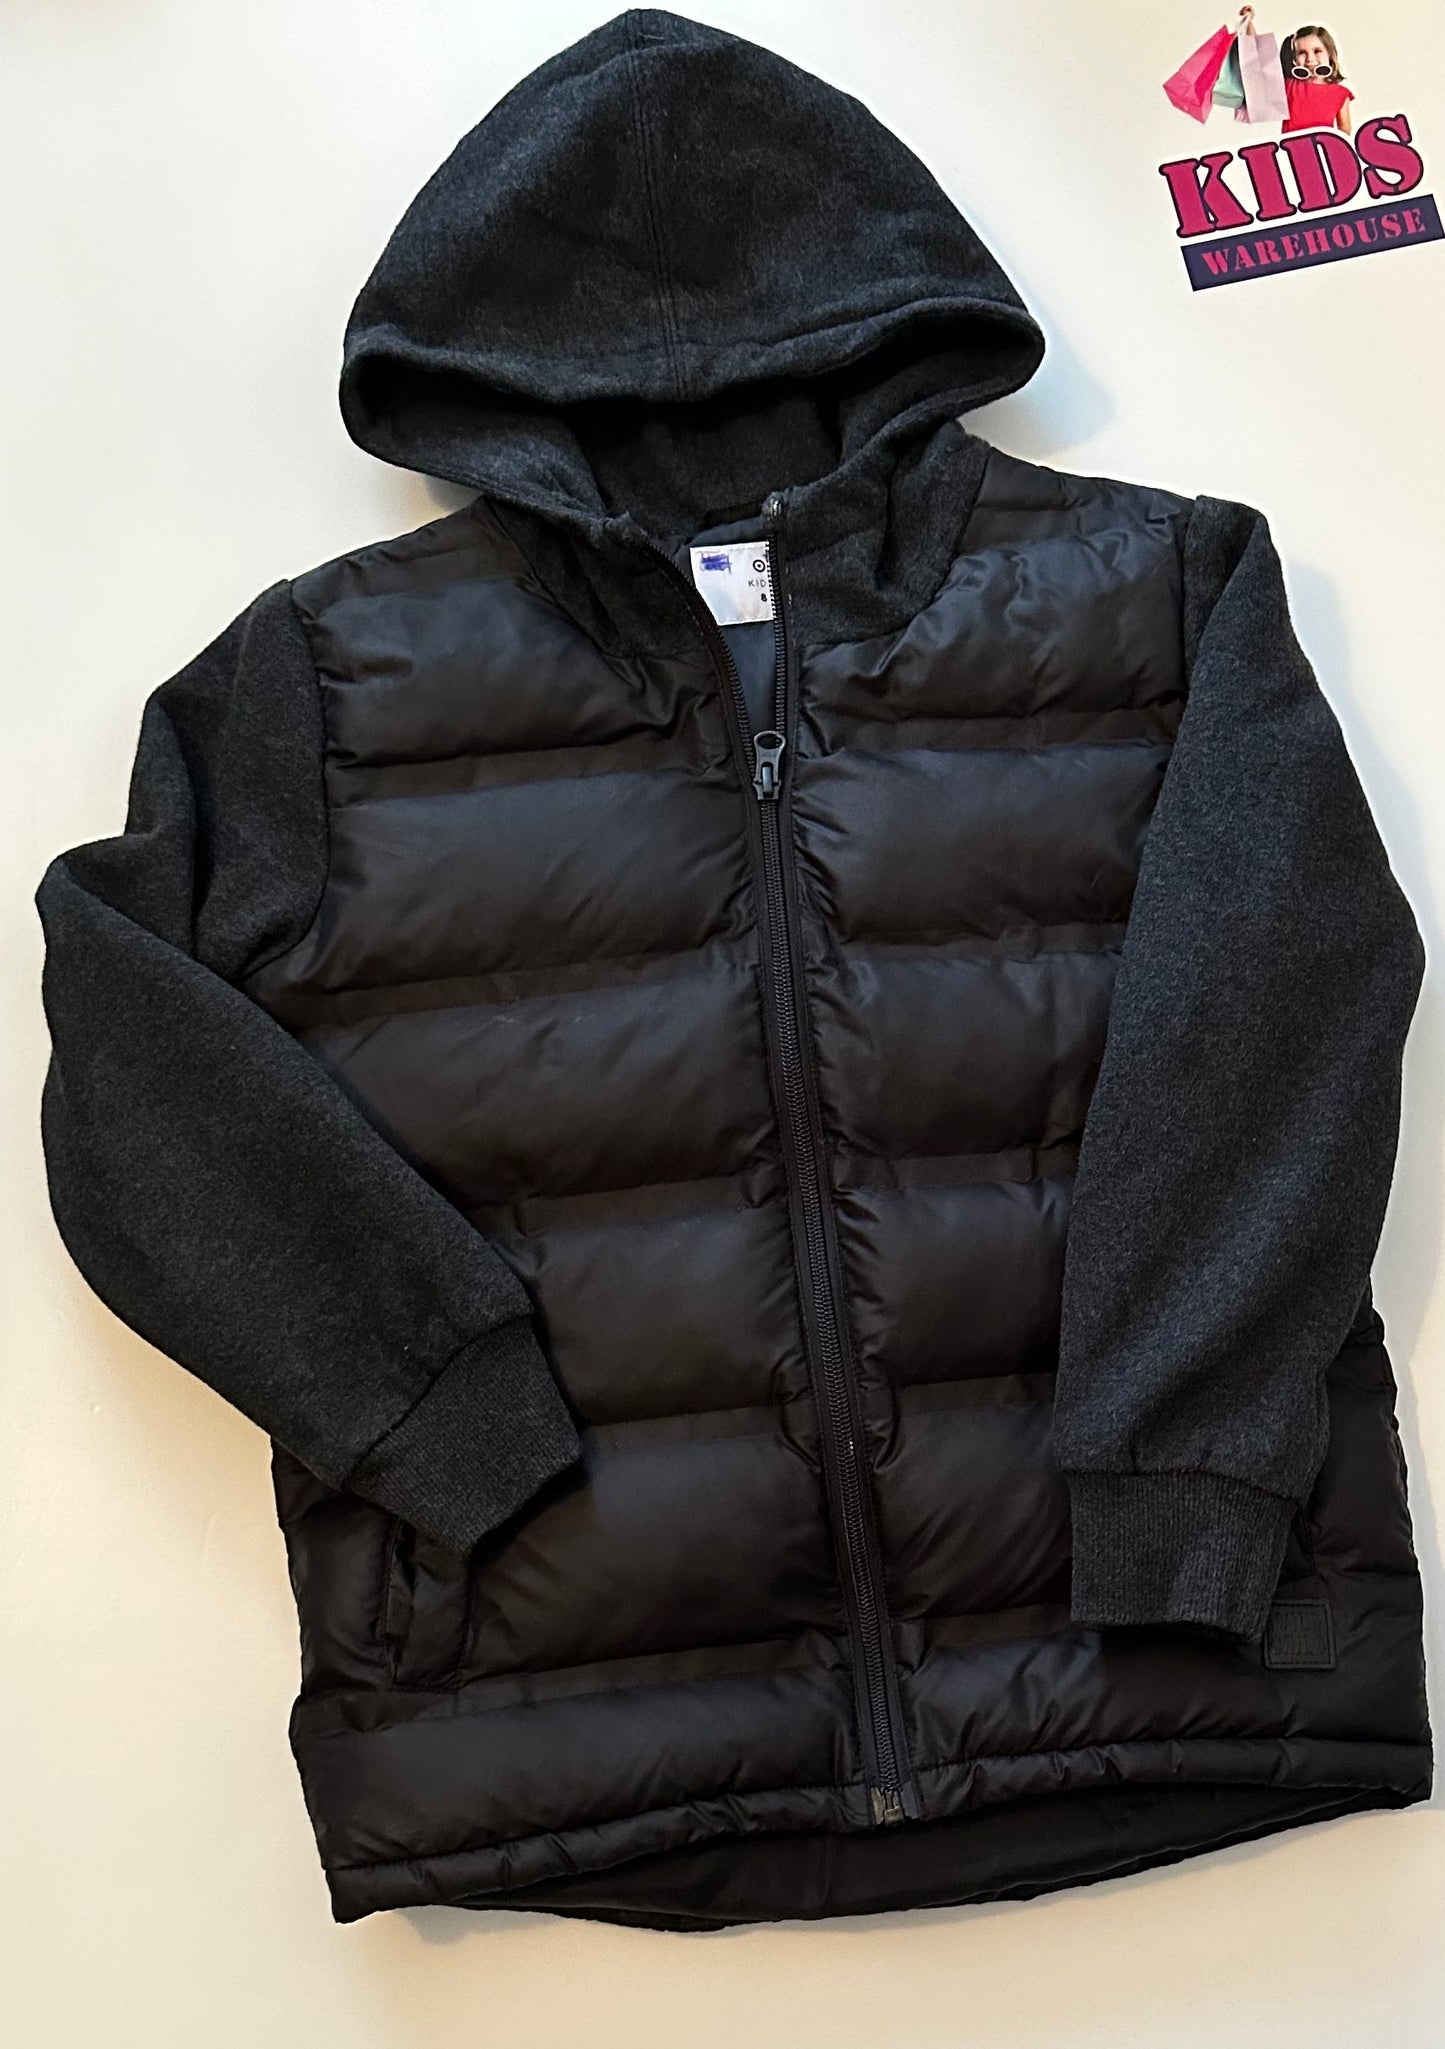 Target Black Puffer Jacket Size 8